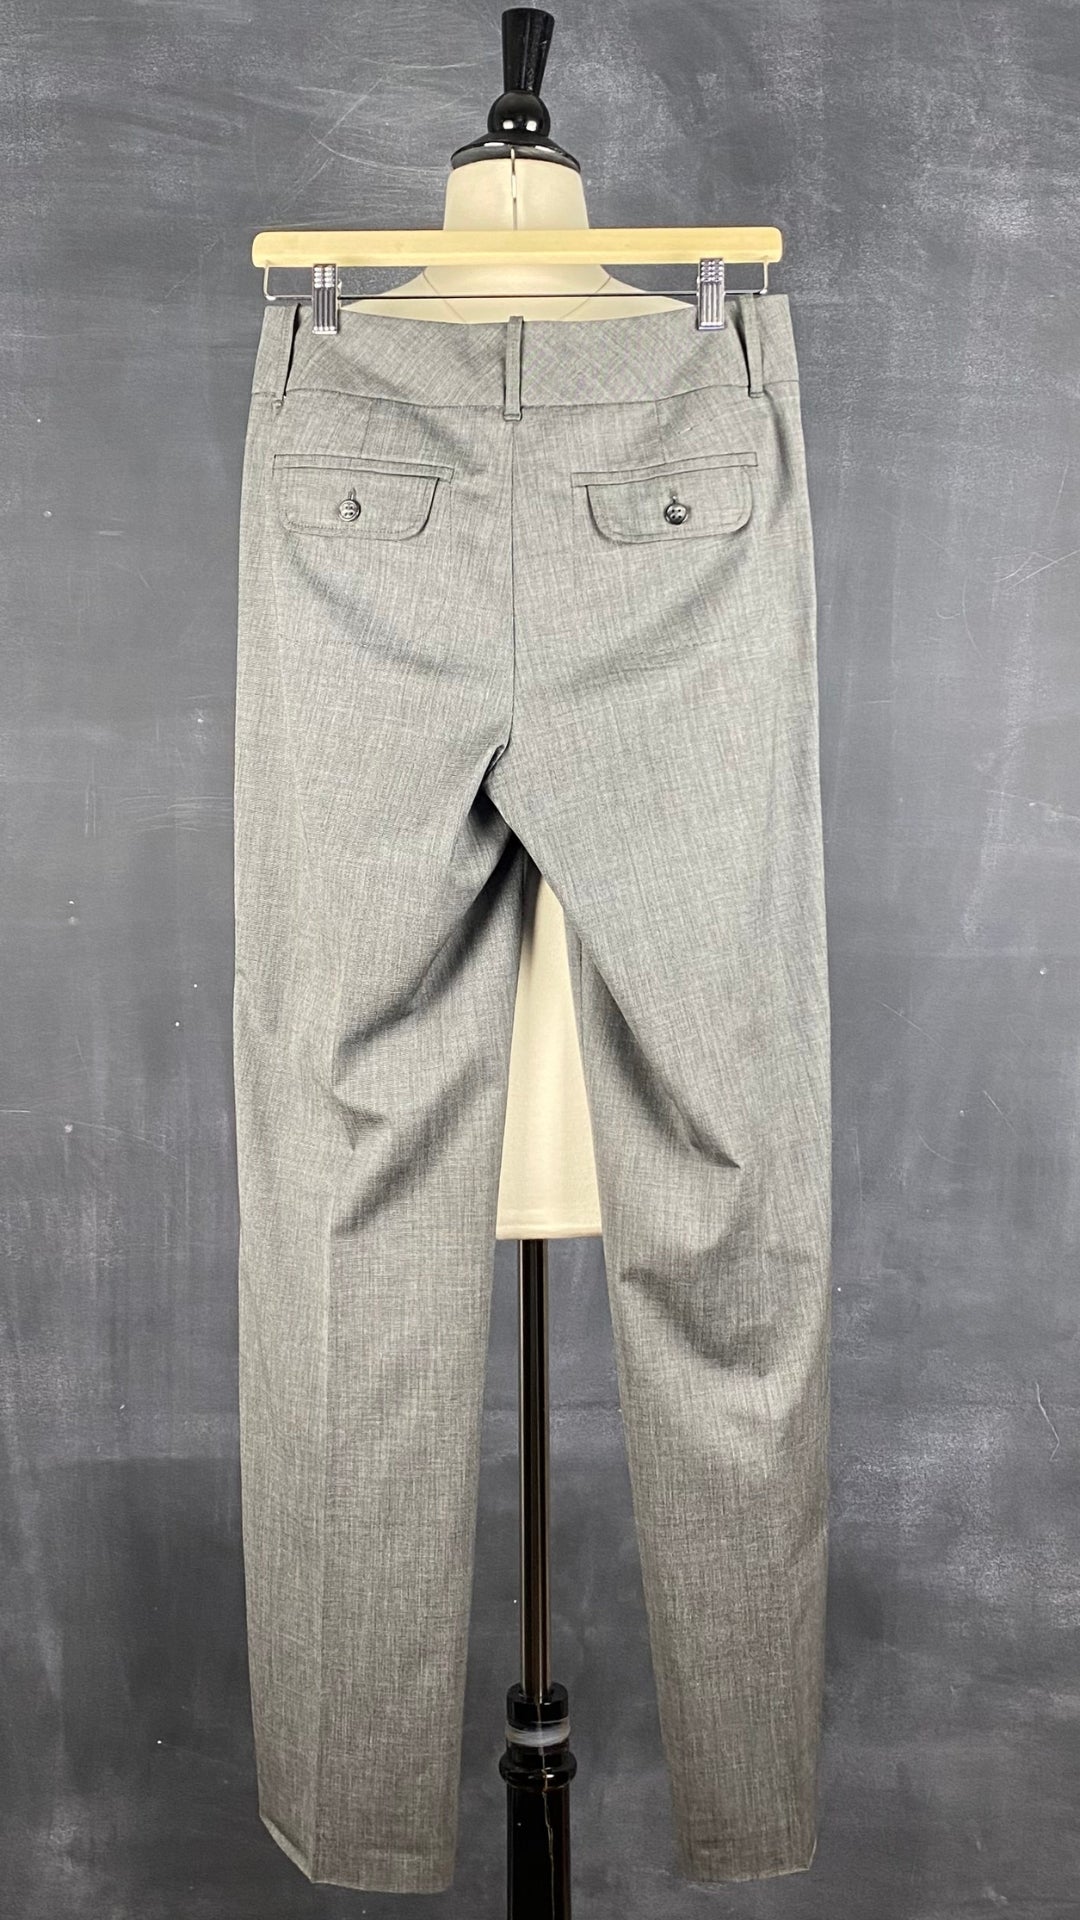 Pantalon gris droit fluide Gardeur, taille estimée à 6. Vue de dos.